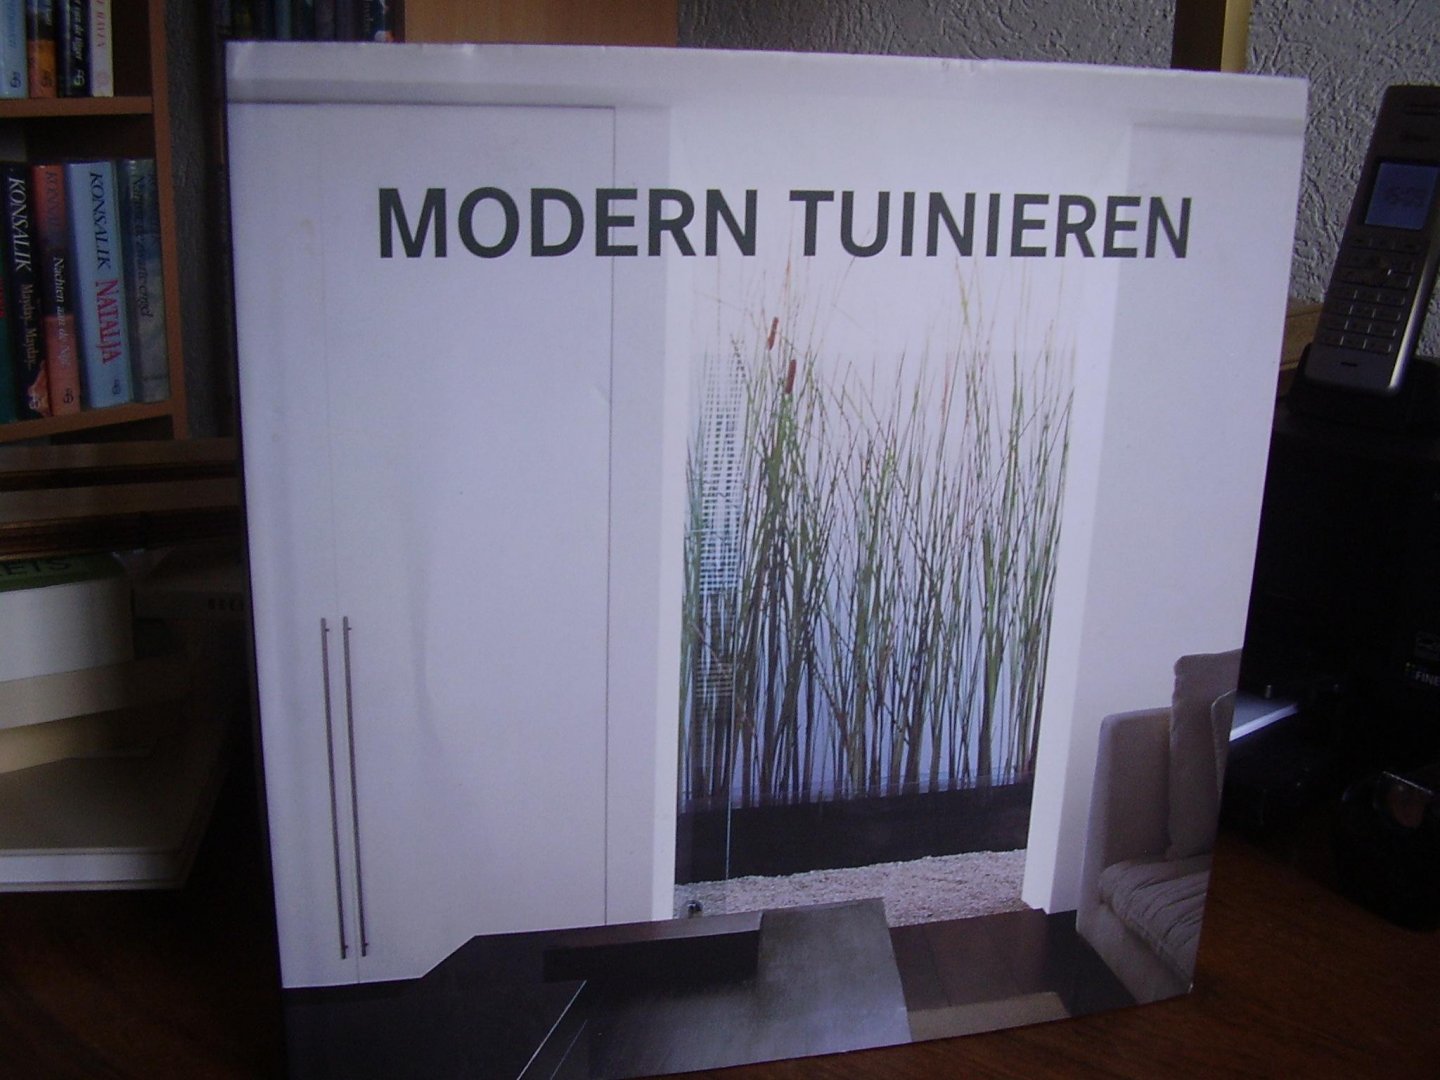 Serrats M - Modern tuinieren  (vier talen)